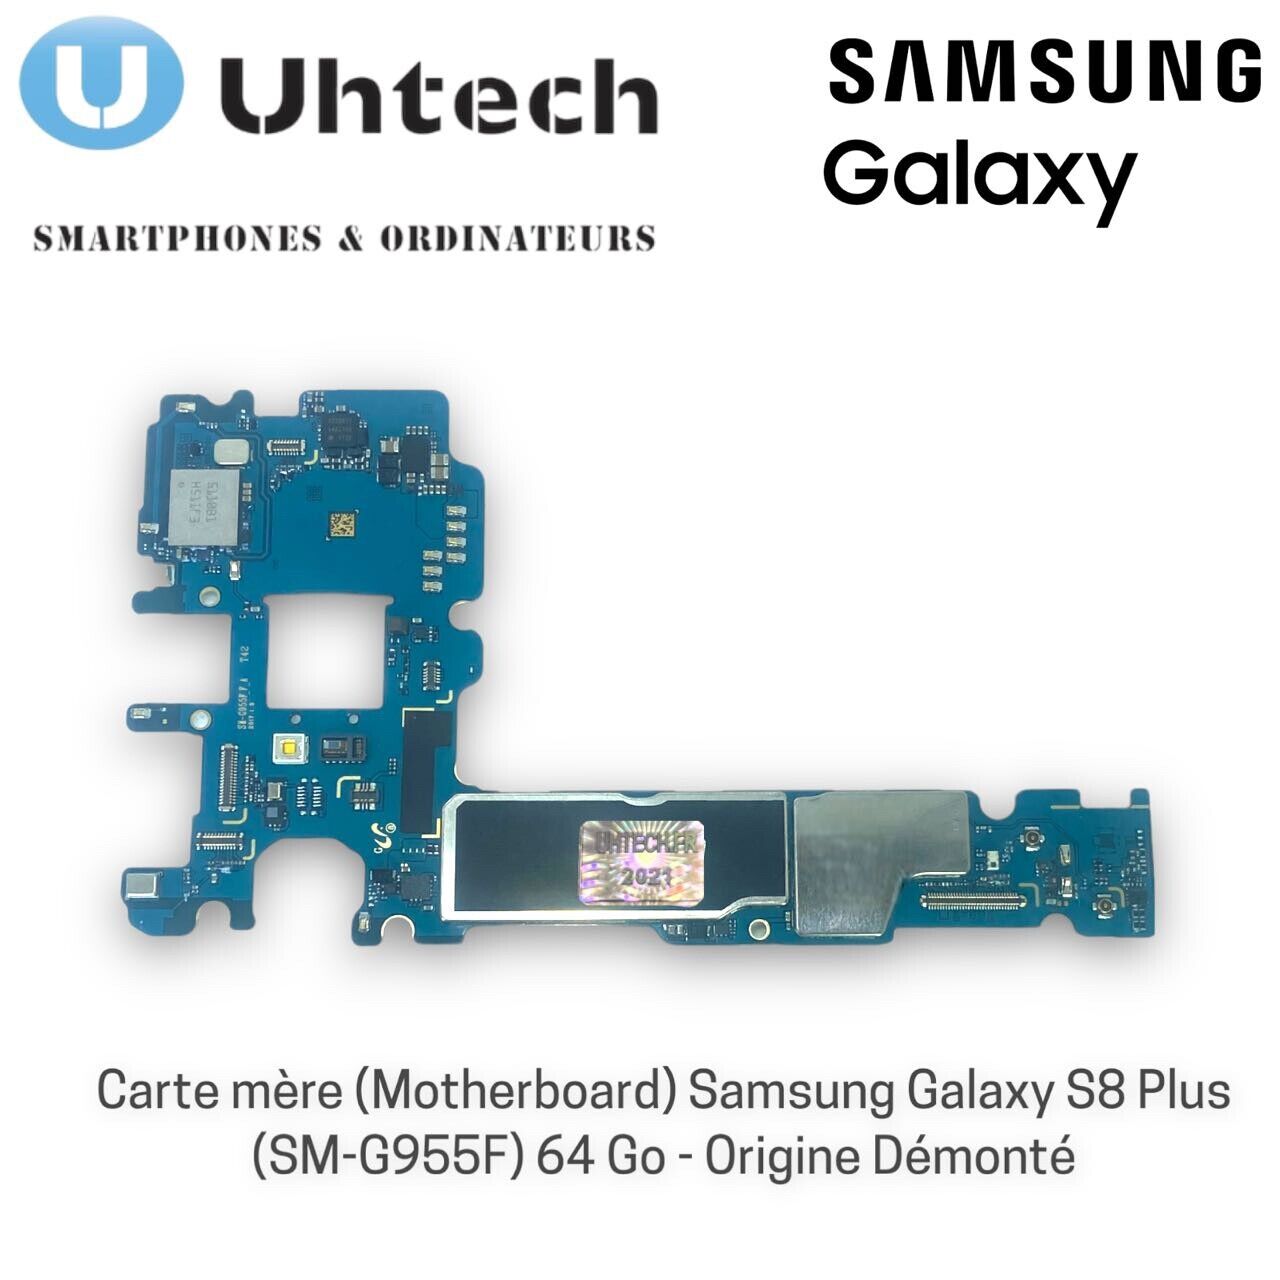 Carte mère (Motherboard) Samsung Galaxy S8 Plus SM-G955F 64 Go - Origine Démonté n° 1